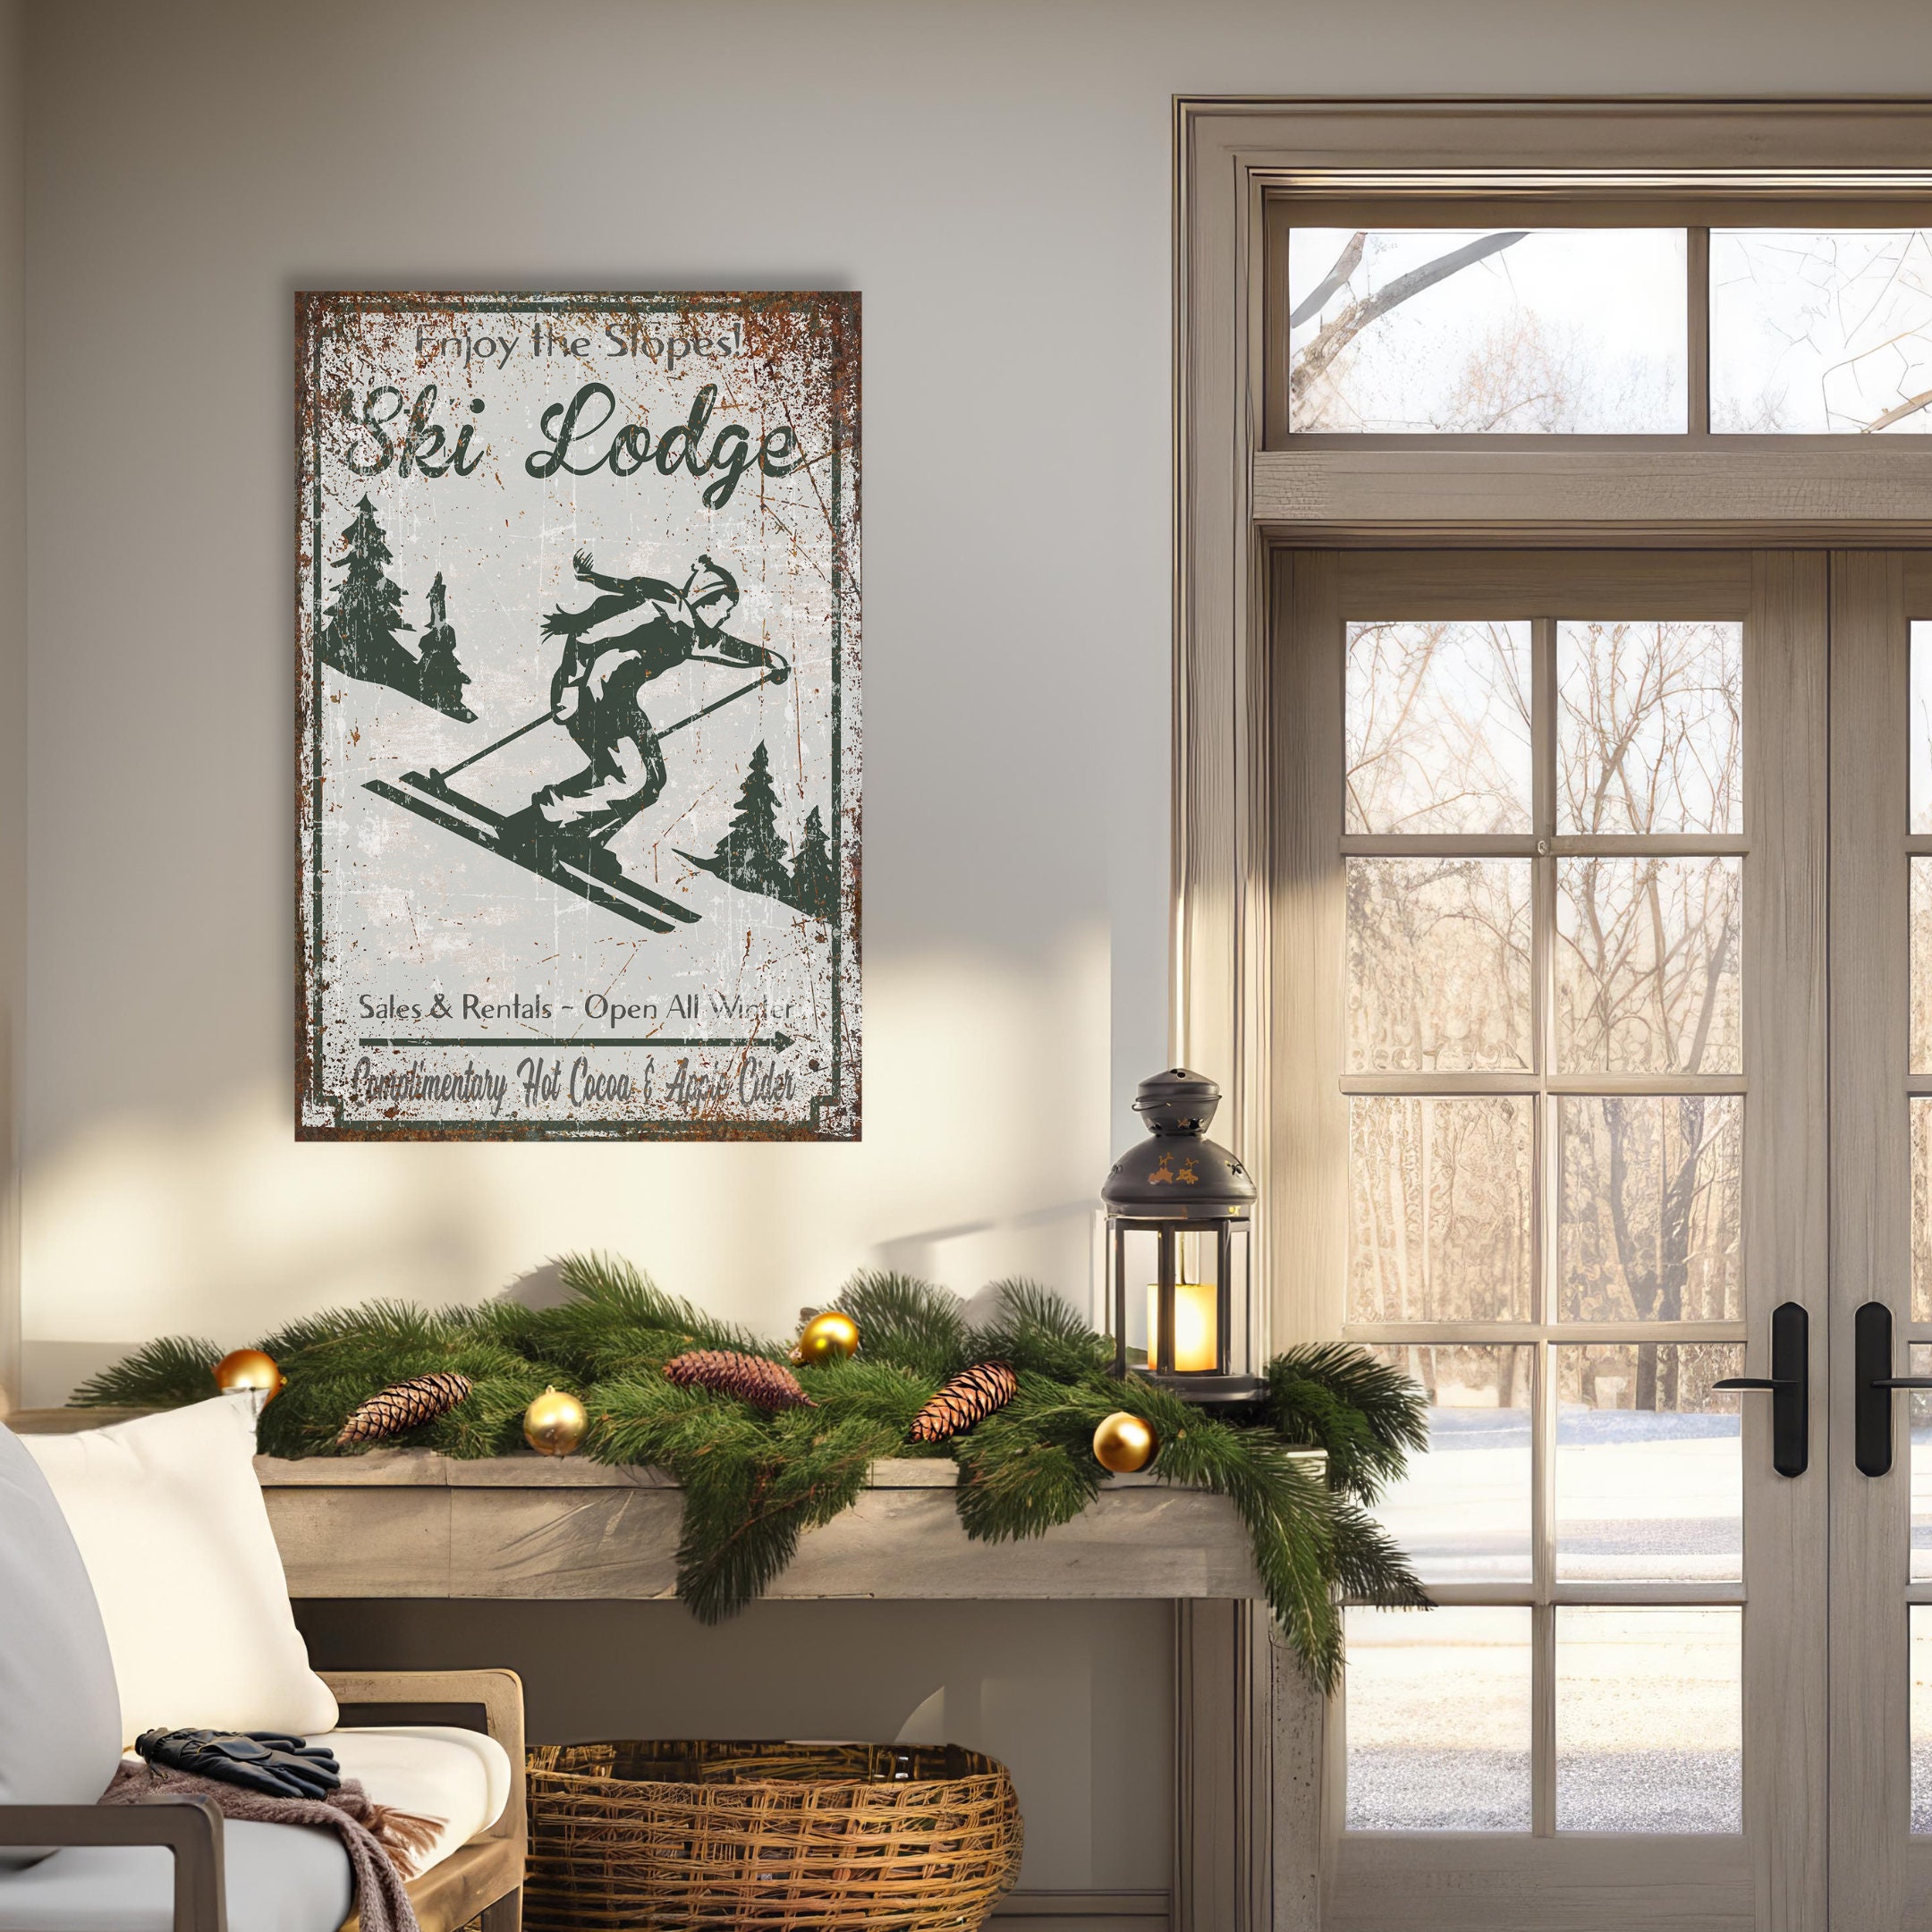 Our Hopeful Home: DIY Christmas Ski Lodge Wall Art